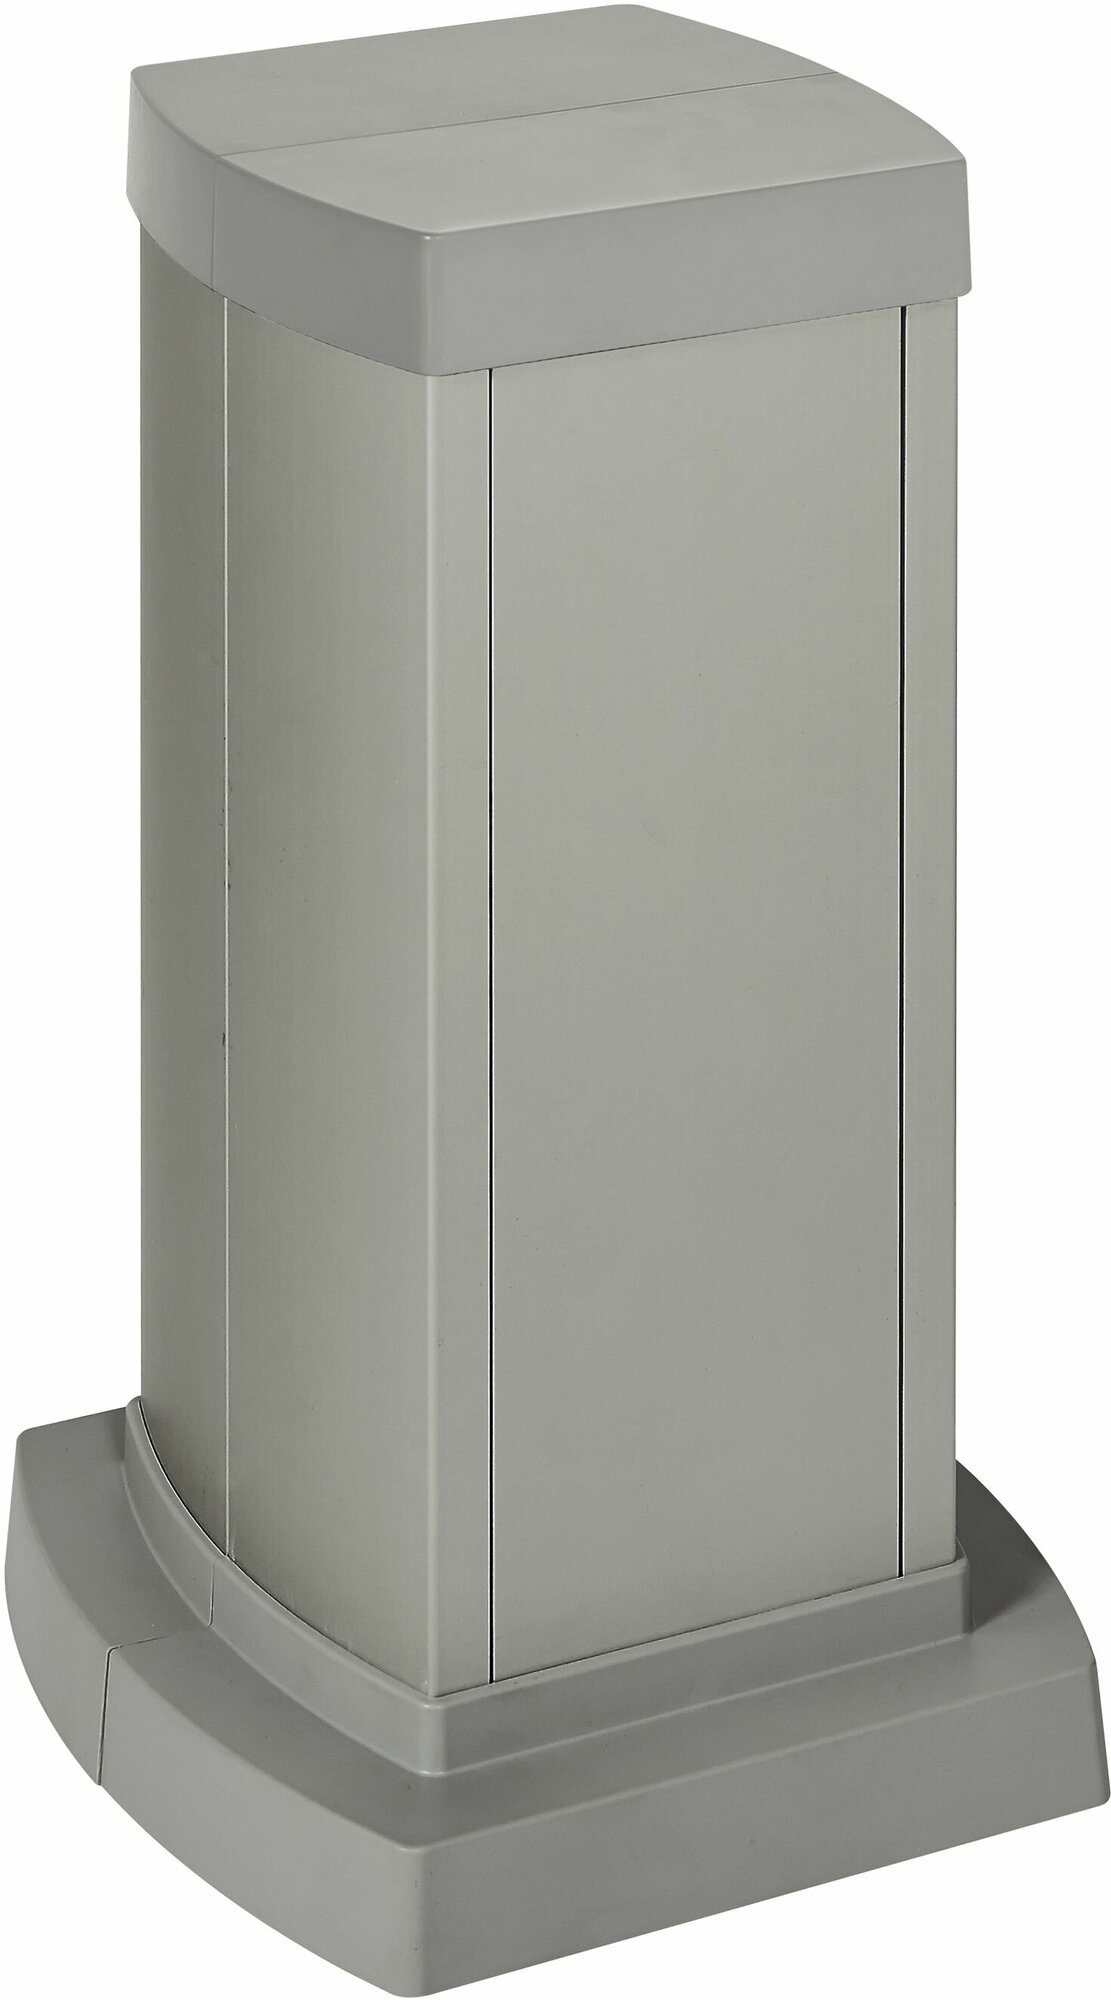 Универсальная мини-колонна алюминиевая с крышкой из алюминия 2 секции, высота 0,3 метра. Алюминий. Legrand 653121